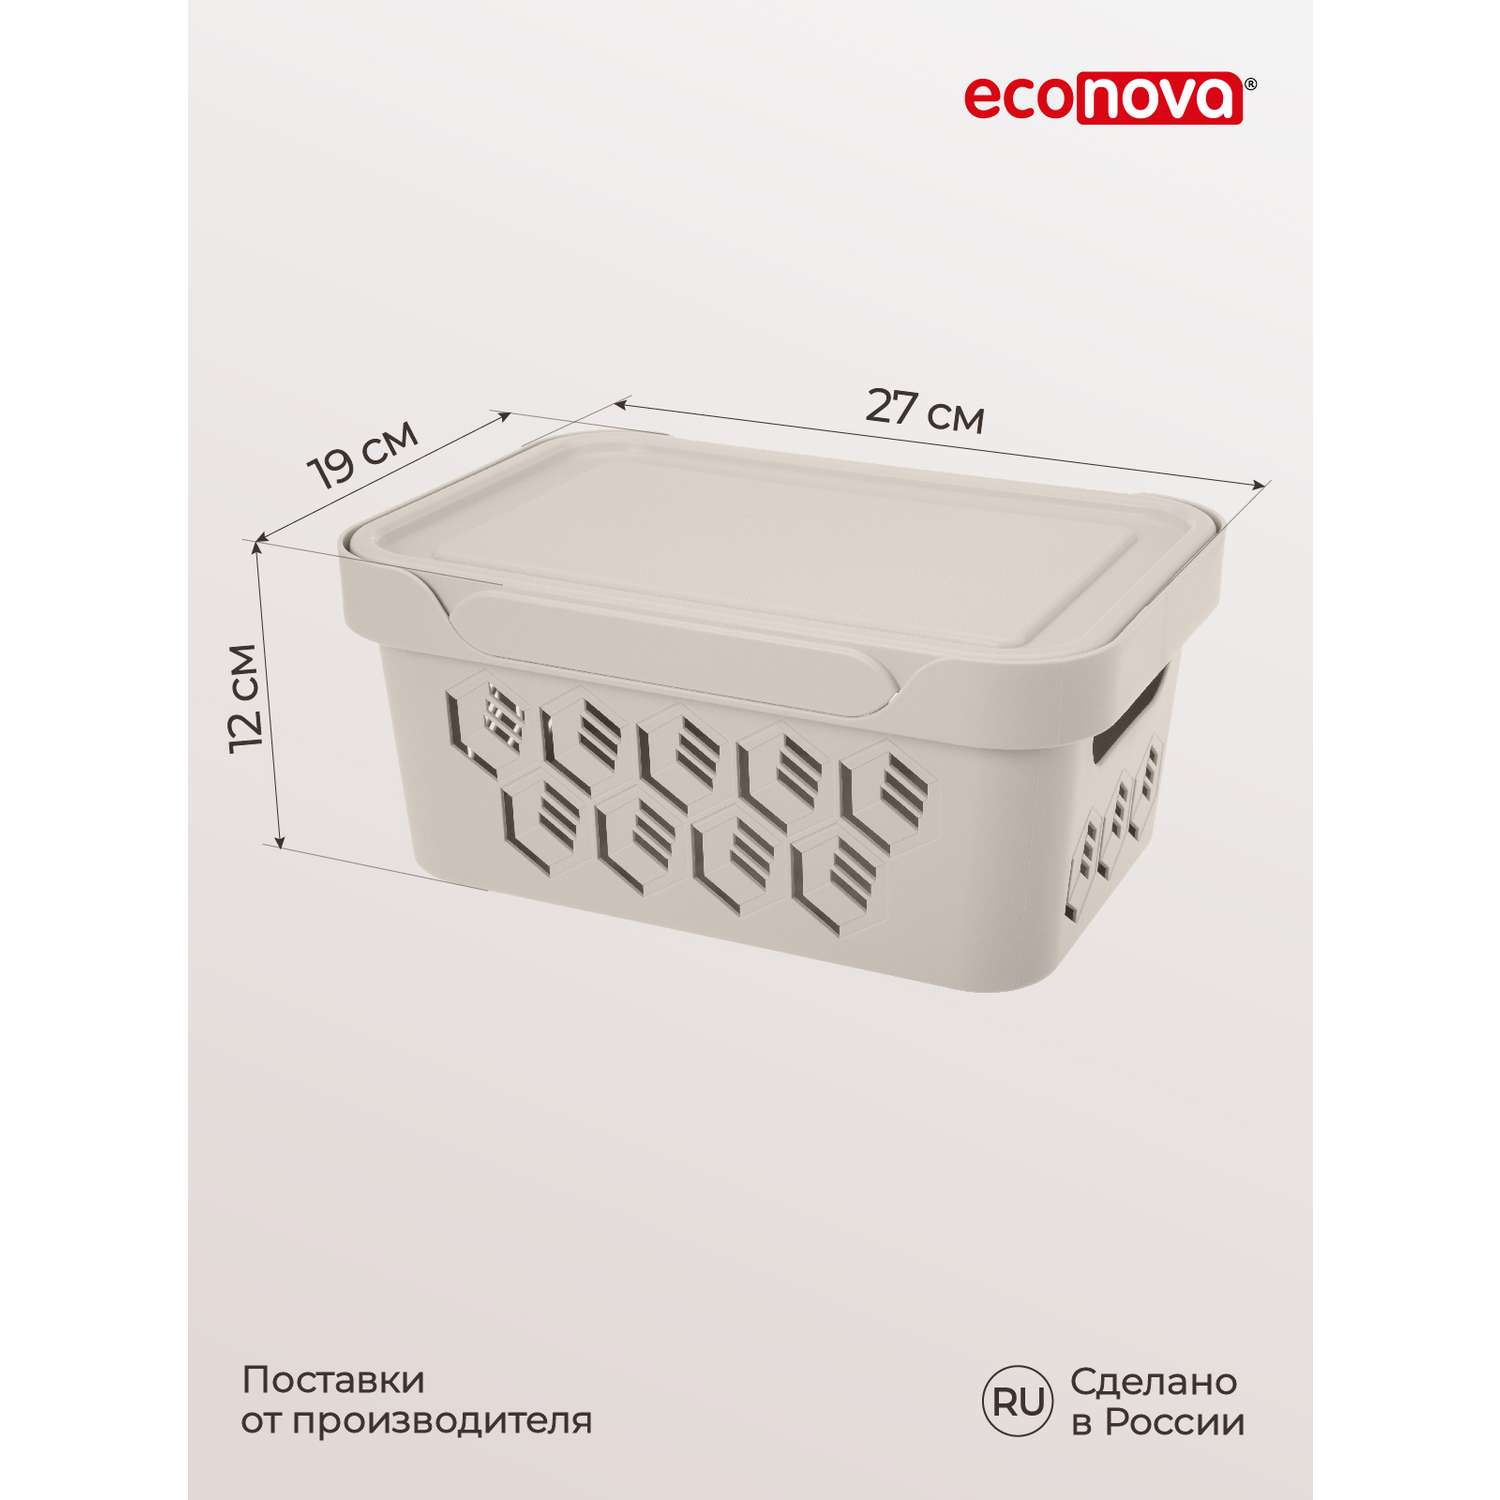 Коробка Econova с крышкой DELUXE 4.6Л светло-бежевая - фото 2